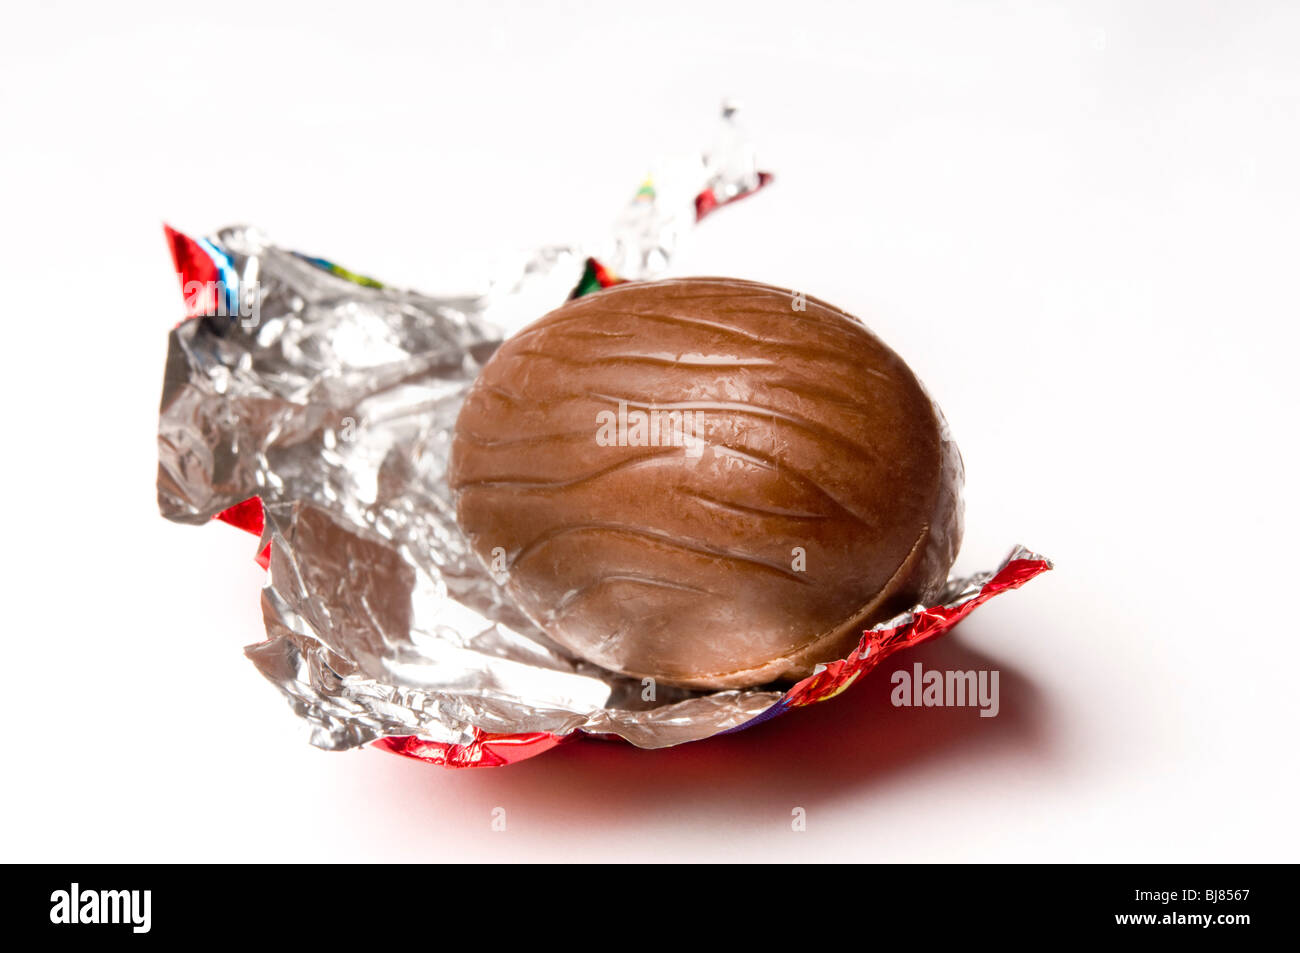 Pasqua uovo di cioccolato non confezionato Foto Stock